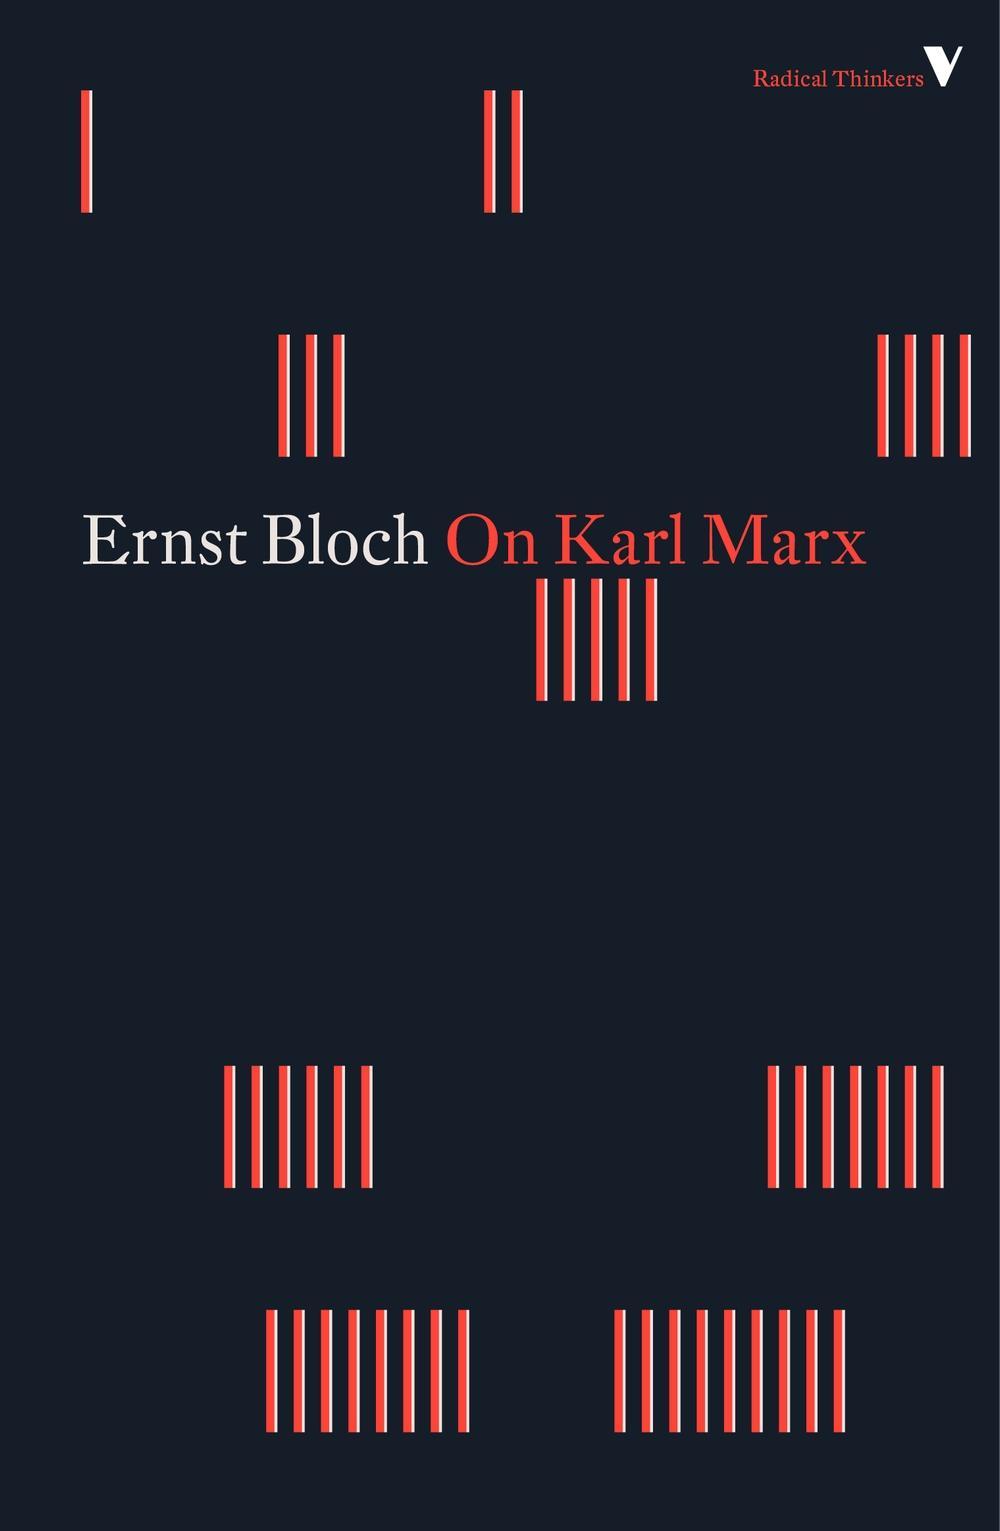 On Karl Marx - Ernst Bloch